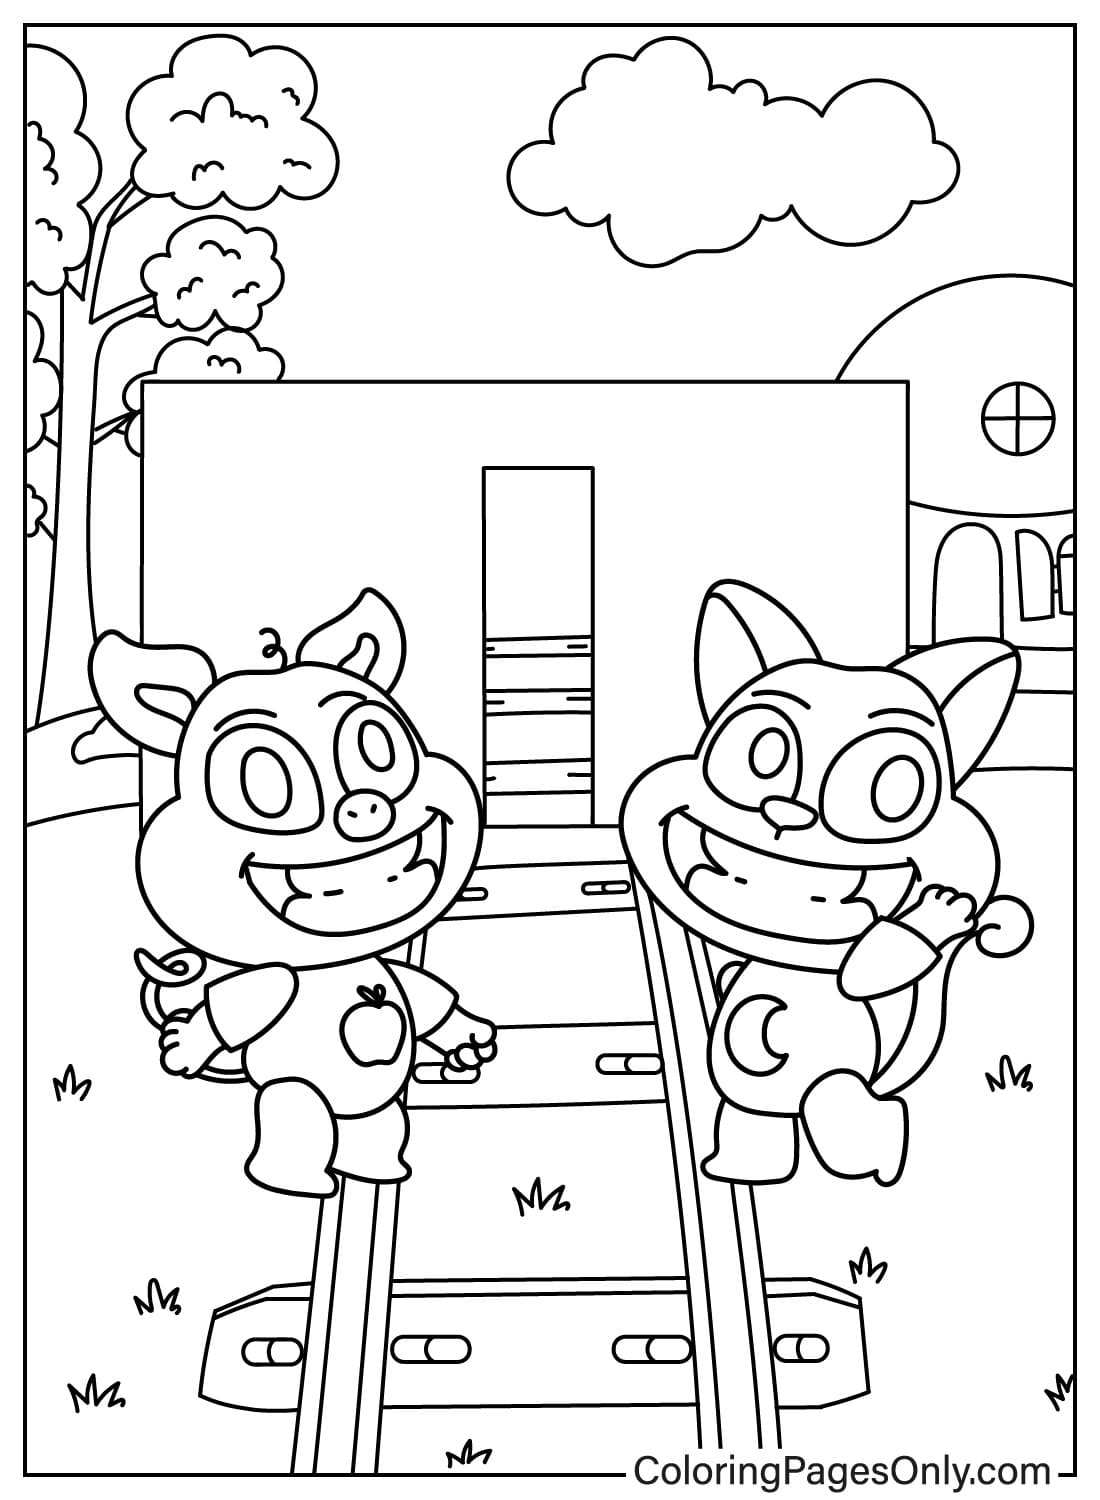 Página para colorear de PickyPiggy y CatNap de CatNap